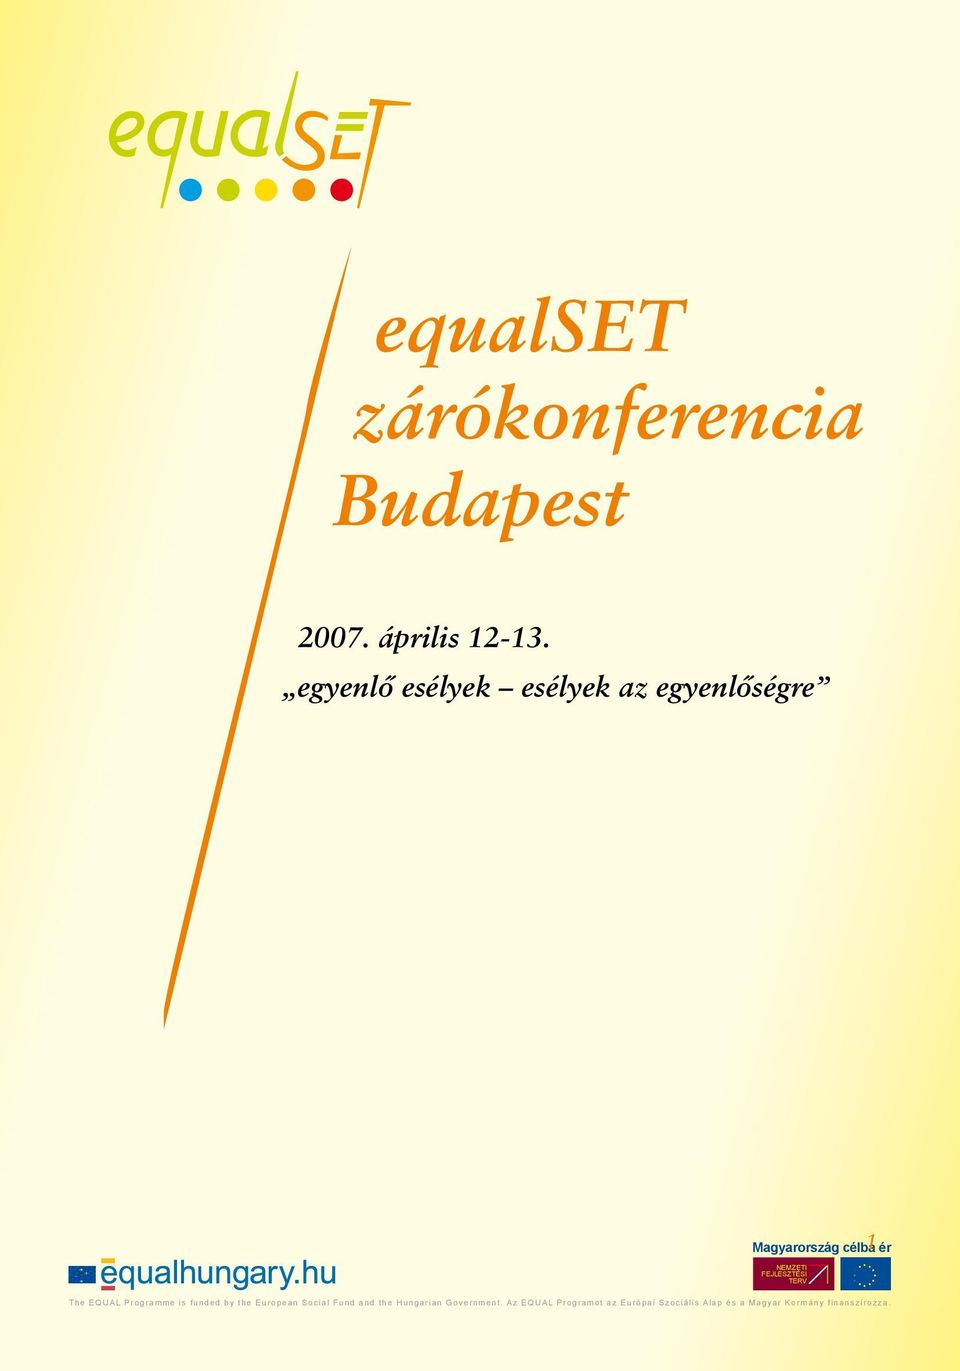 European Social Fund and the Hungarian Government. Az EQUAL Programot az Európai Szociális Alap és a Magyar Kormány finanszírozza.